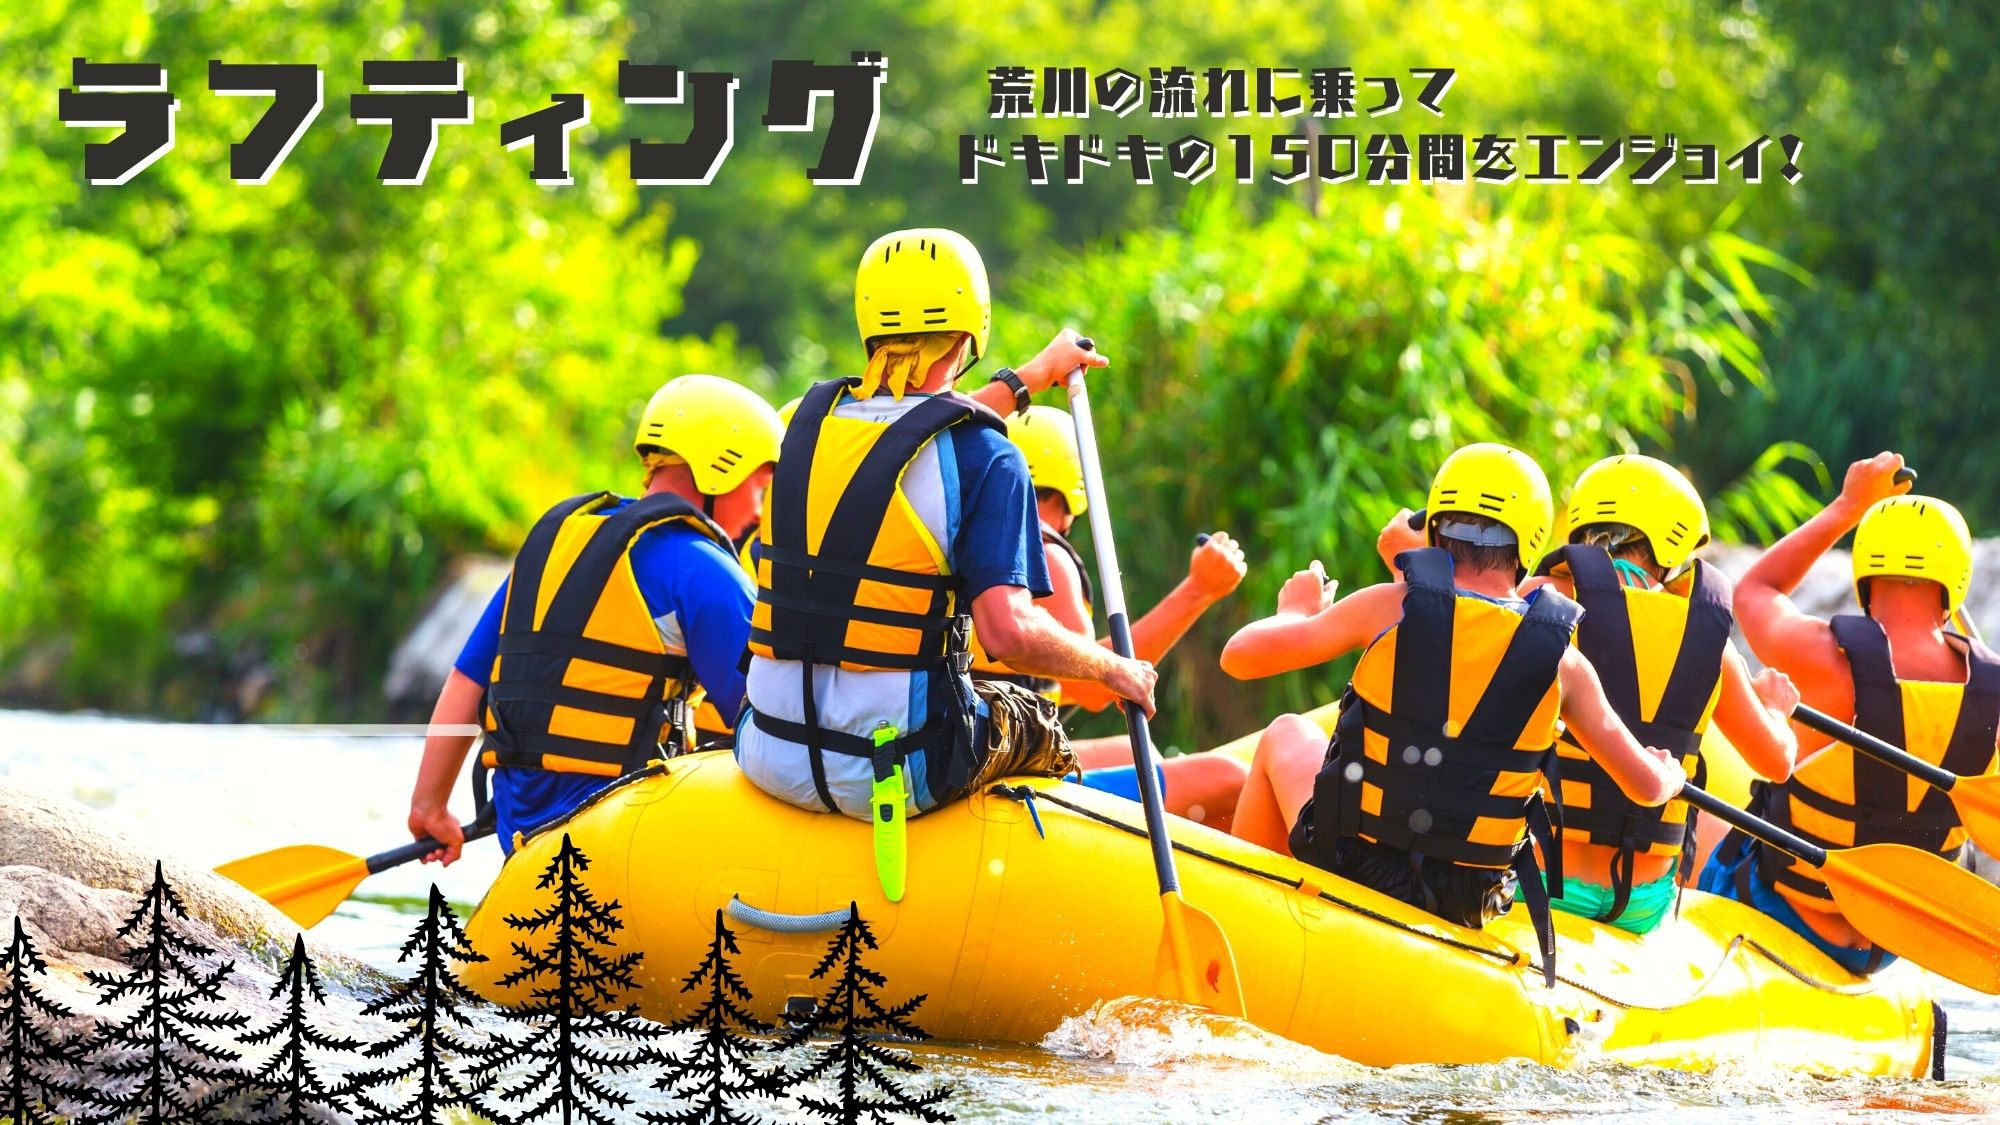 【長瀞ラフティング体験プラン】 荒川の流れに乗って、ドキドキの150分間をエンジョイ！